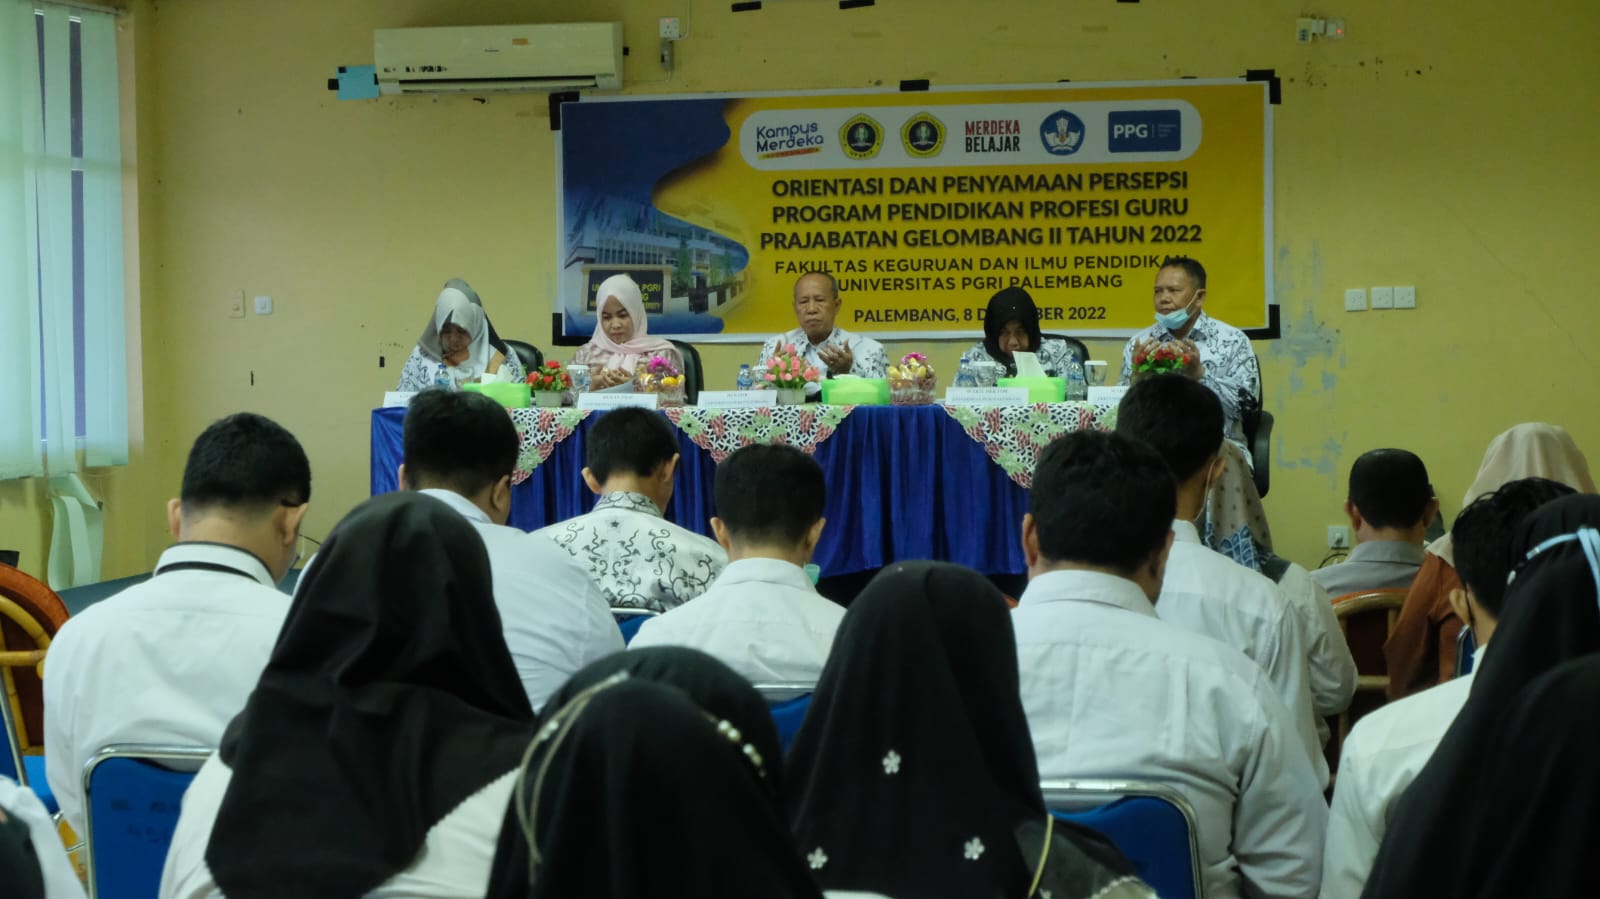 GTK Pusat Kemendikbud mempercayakan kepada Universitas PGRI Palembang  Menyelenggarakan PPG Prajabatan Pada Program Studi Pendidkan IPS  (Pendidikan geografi dan Pendidikan Sejarah) 